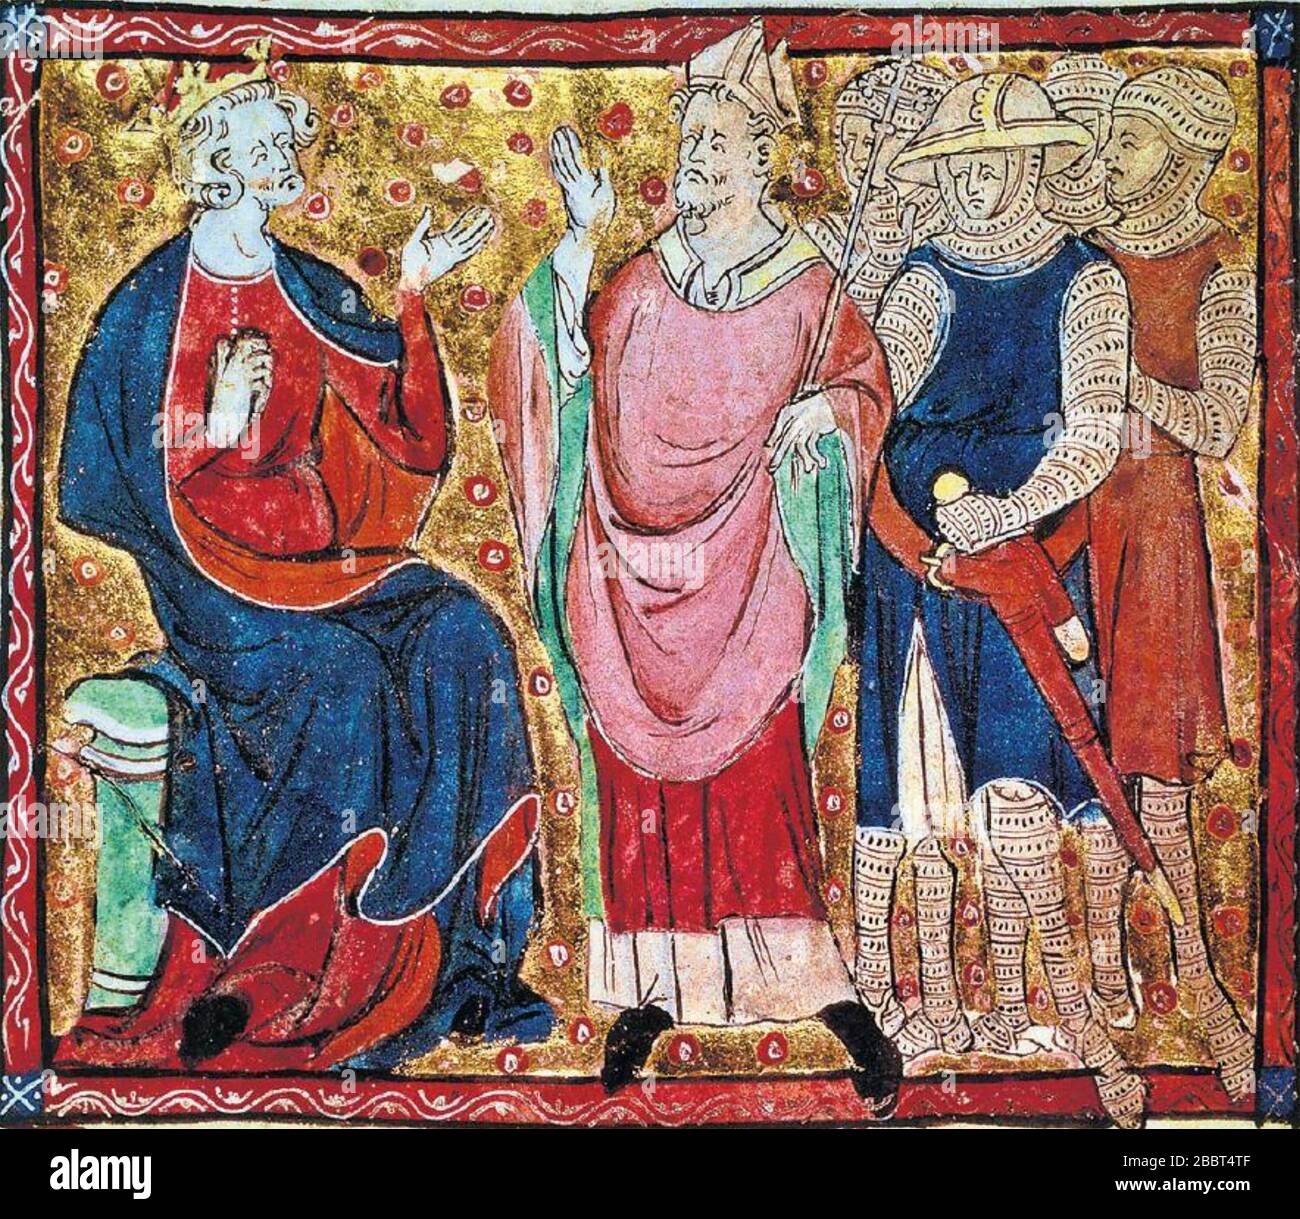 HENRY II (1133-1189) avec Thomas à Becket et les trois chevaliers au XIVe siècle Liber Legum Antiquorum Regum Banque D'Images